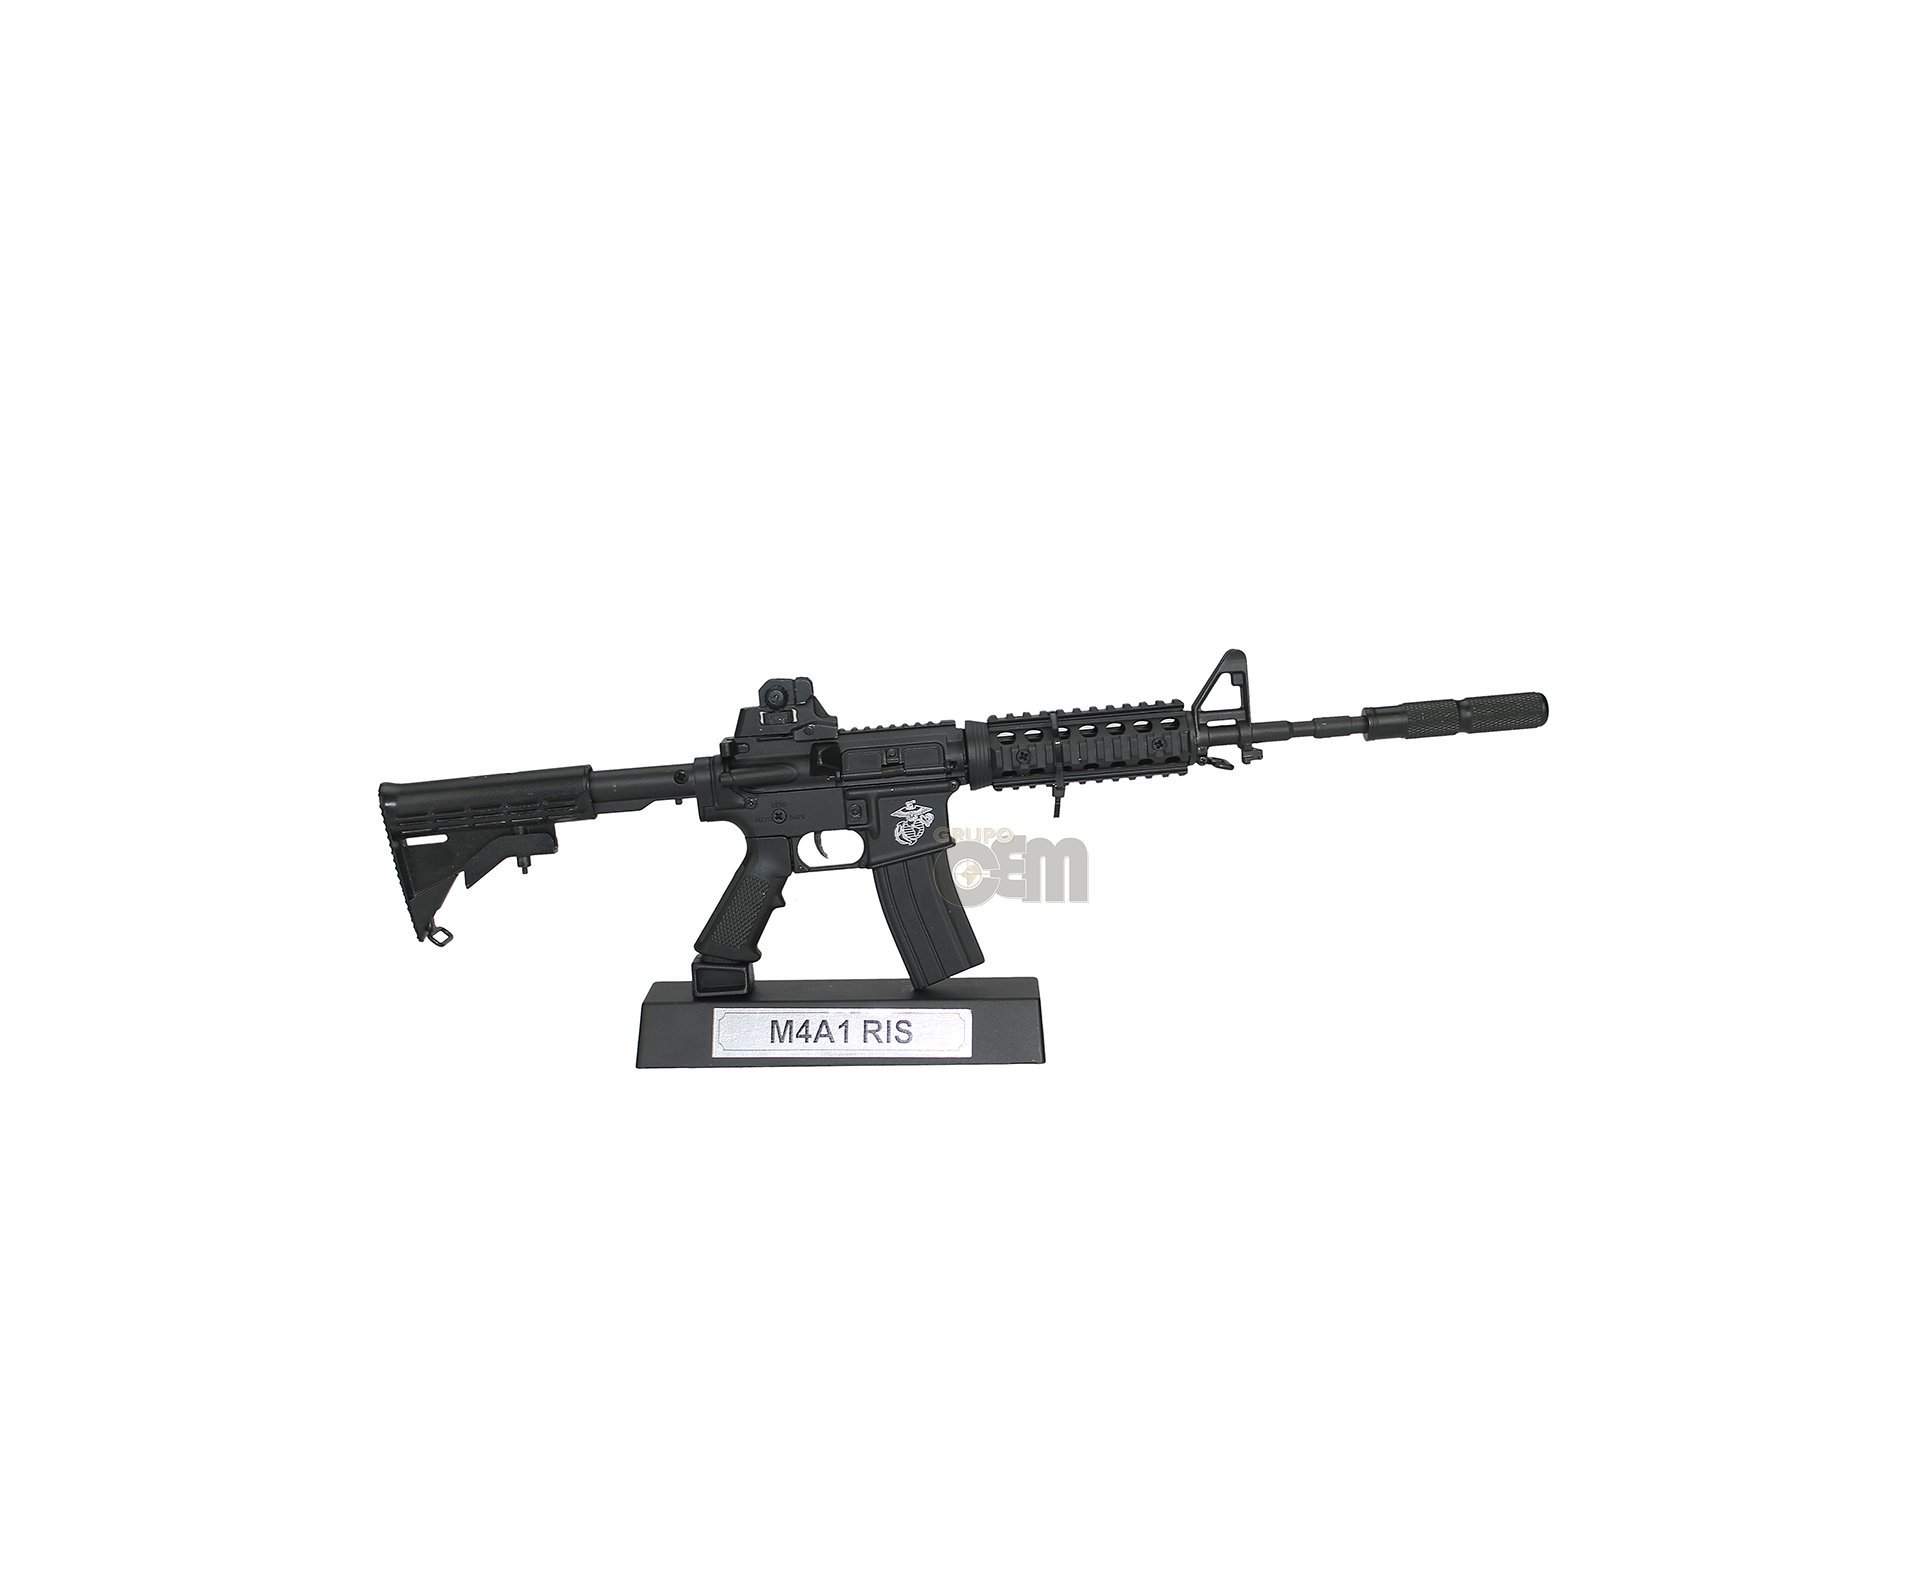 Rifle M4a1 Ris Black Miniaturai Metática - Arsenal Guns